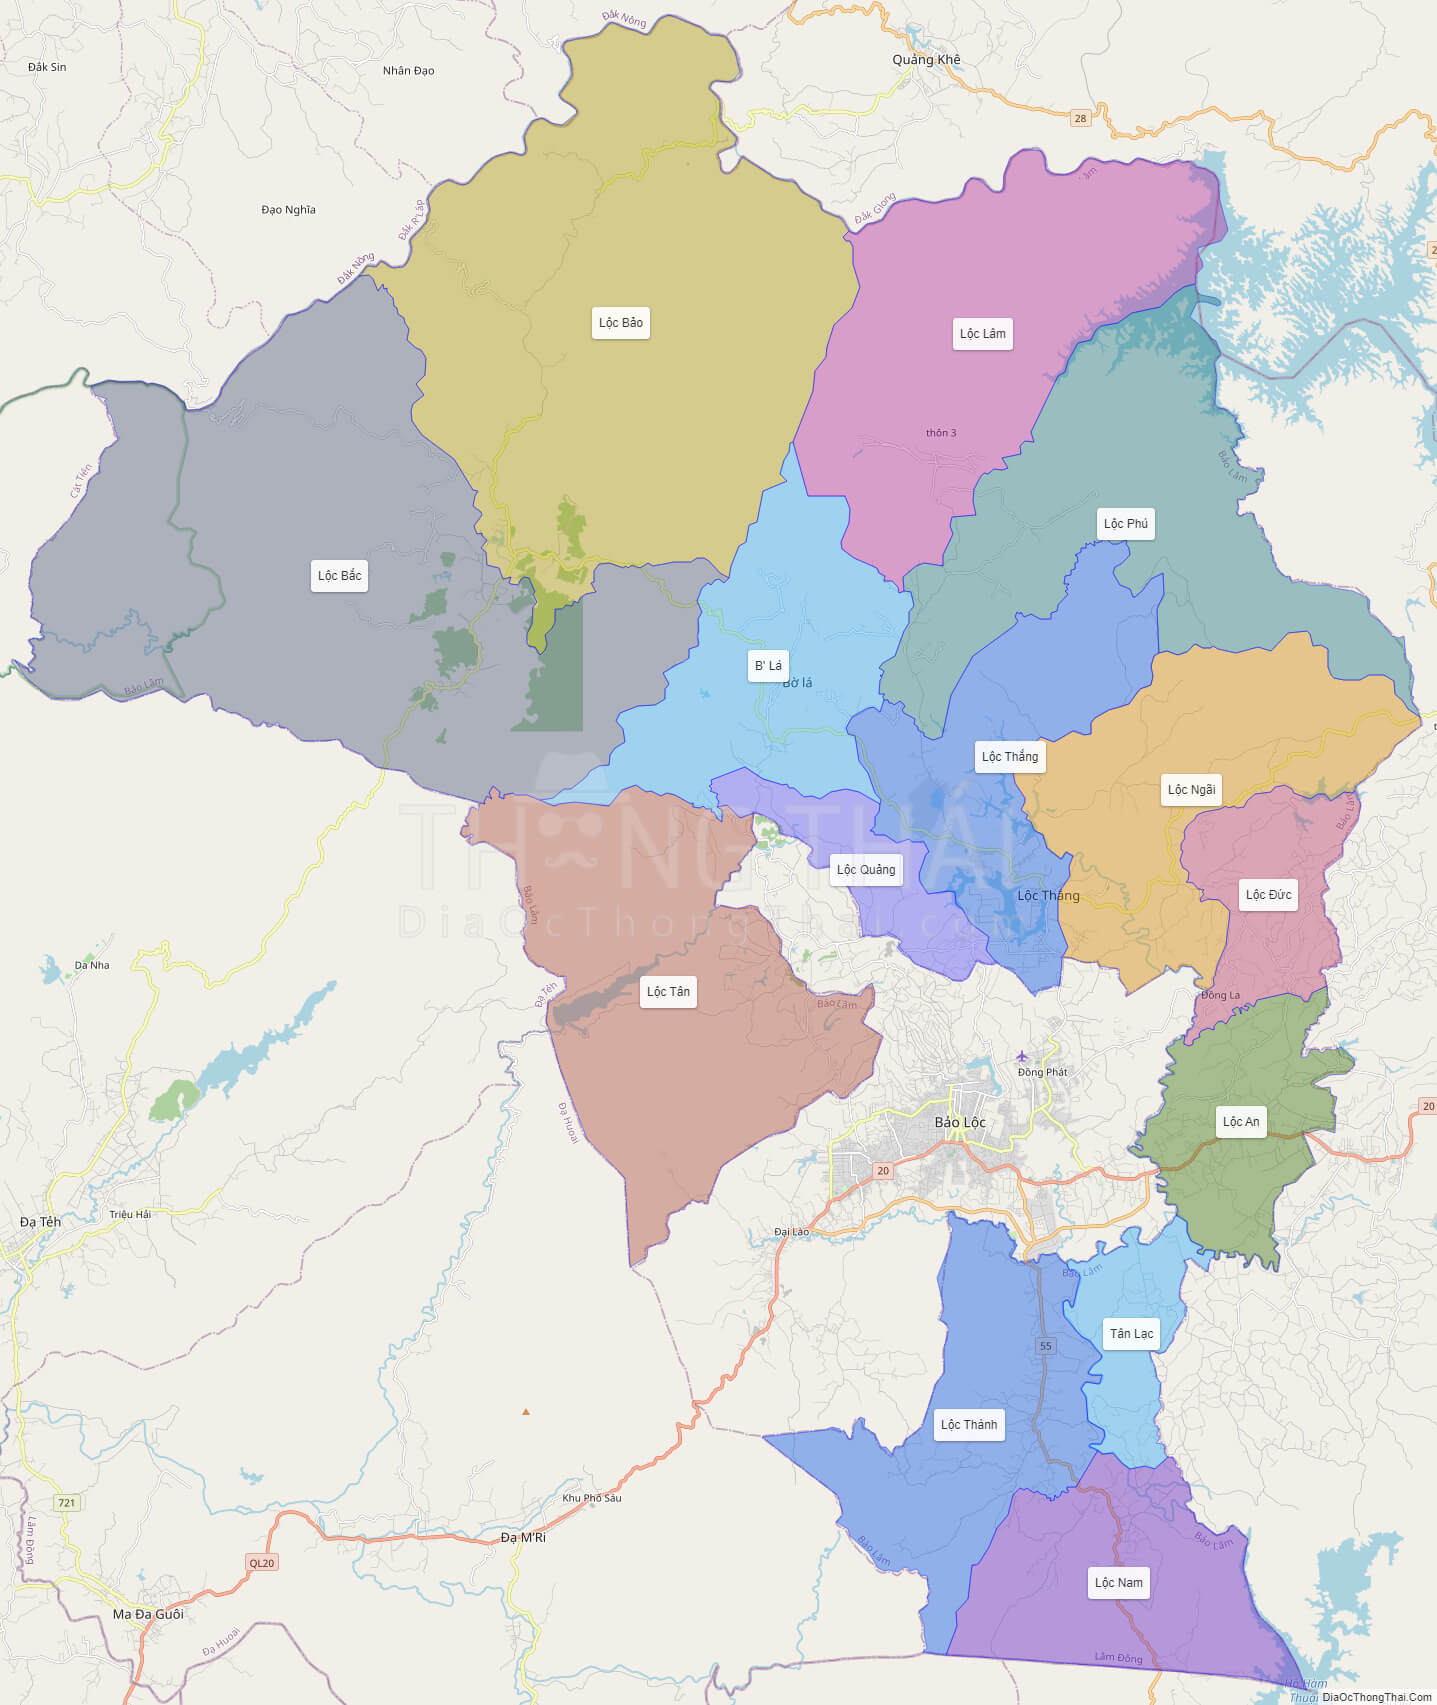 Bộ chỉ dẫn bản đồ huyện Bảo Lâm Lâm Đồng phù hợp cho du lịch và khám phá địa phương